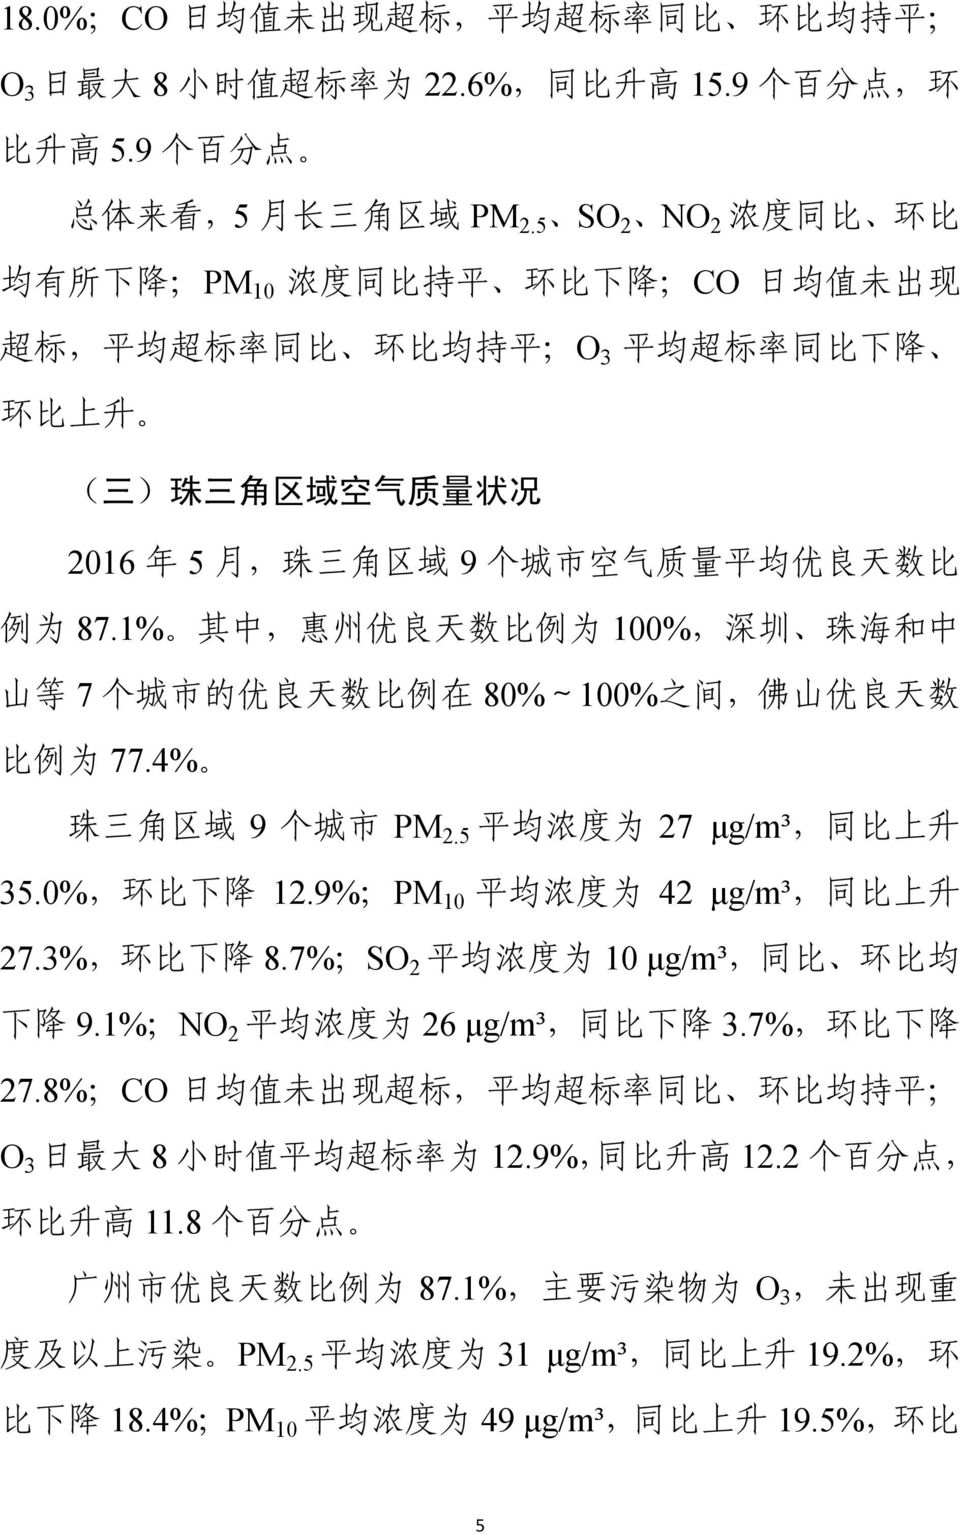 质 量 平 均 优 良 天 数 比 例 为 87.1% 其 中, 惠 州 优 良 天 数 比 例 为 100%, 深 圳 珠 海 和 中 山 等 7 个 城 市 的 优 良 天 数 比 例 在 80%~100% 之 间, 佛 山 优 良 天 数 比 例 为 77.4% 珠 三 角 区 域 9 个 城 市 PM 2.5 平 均 浓 度 为 27 μg/m³, 同 比 上 升 35.